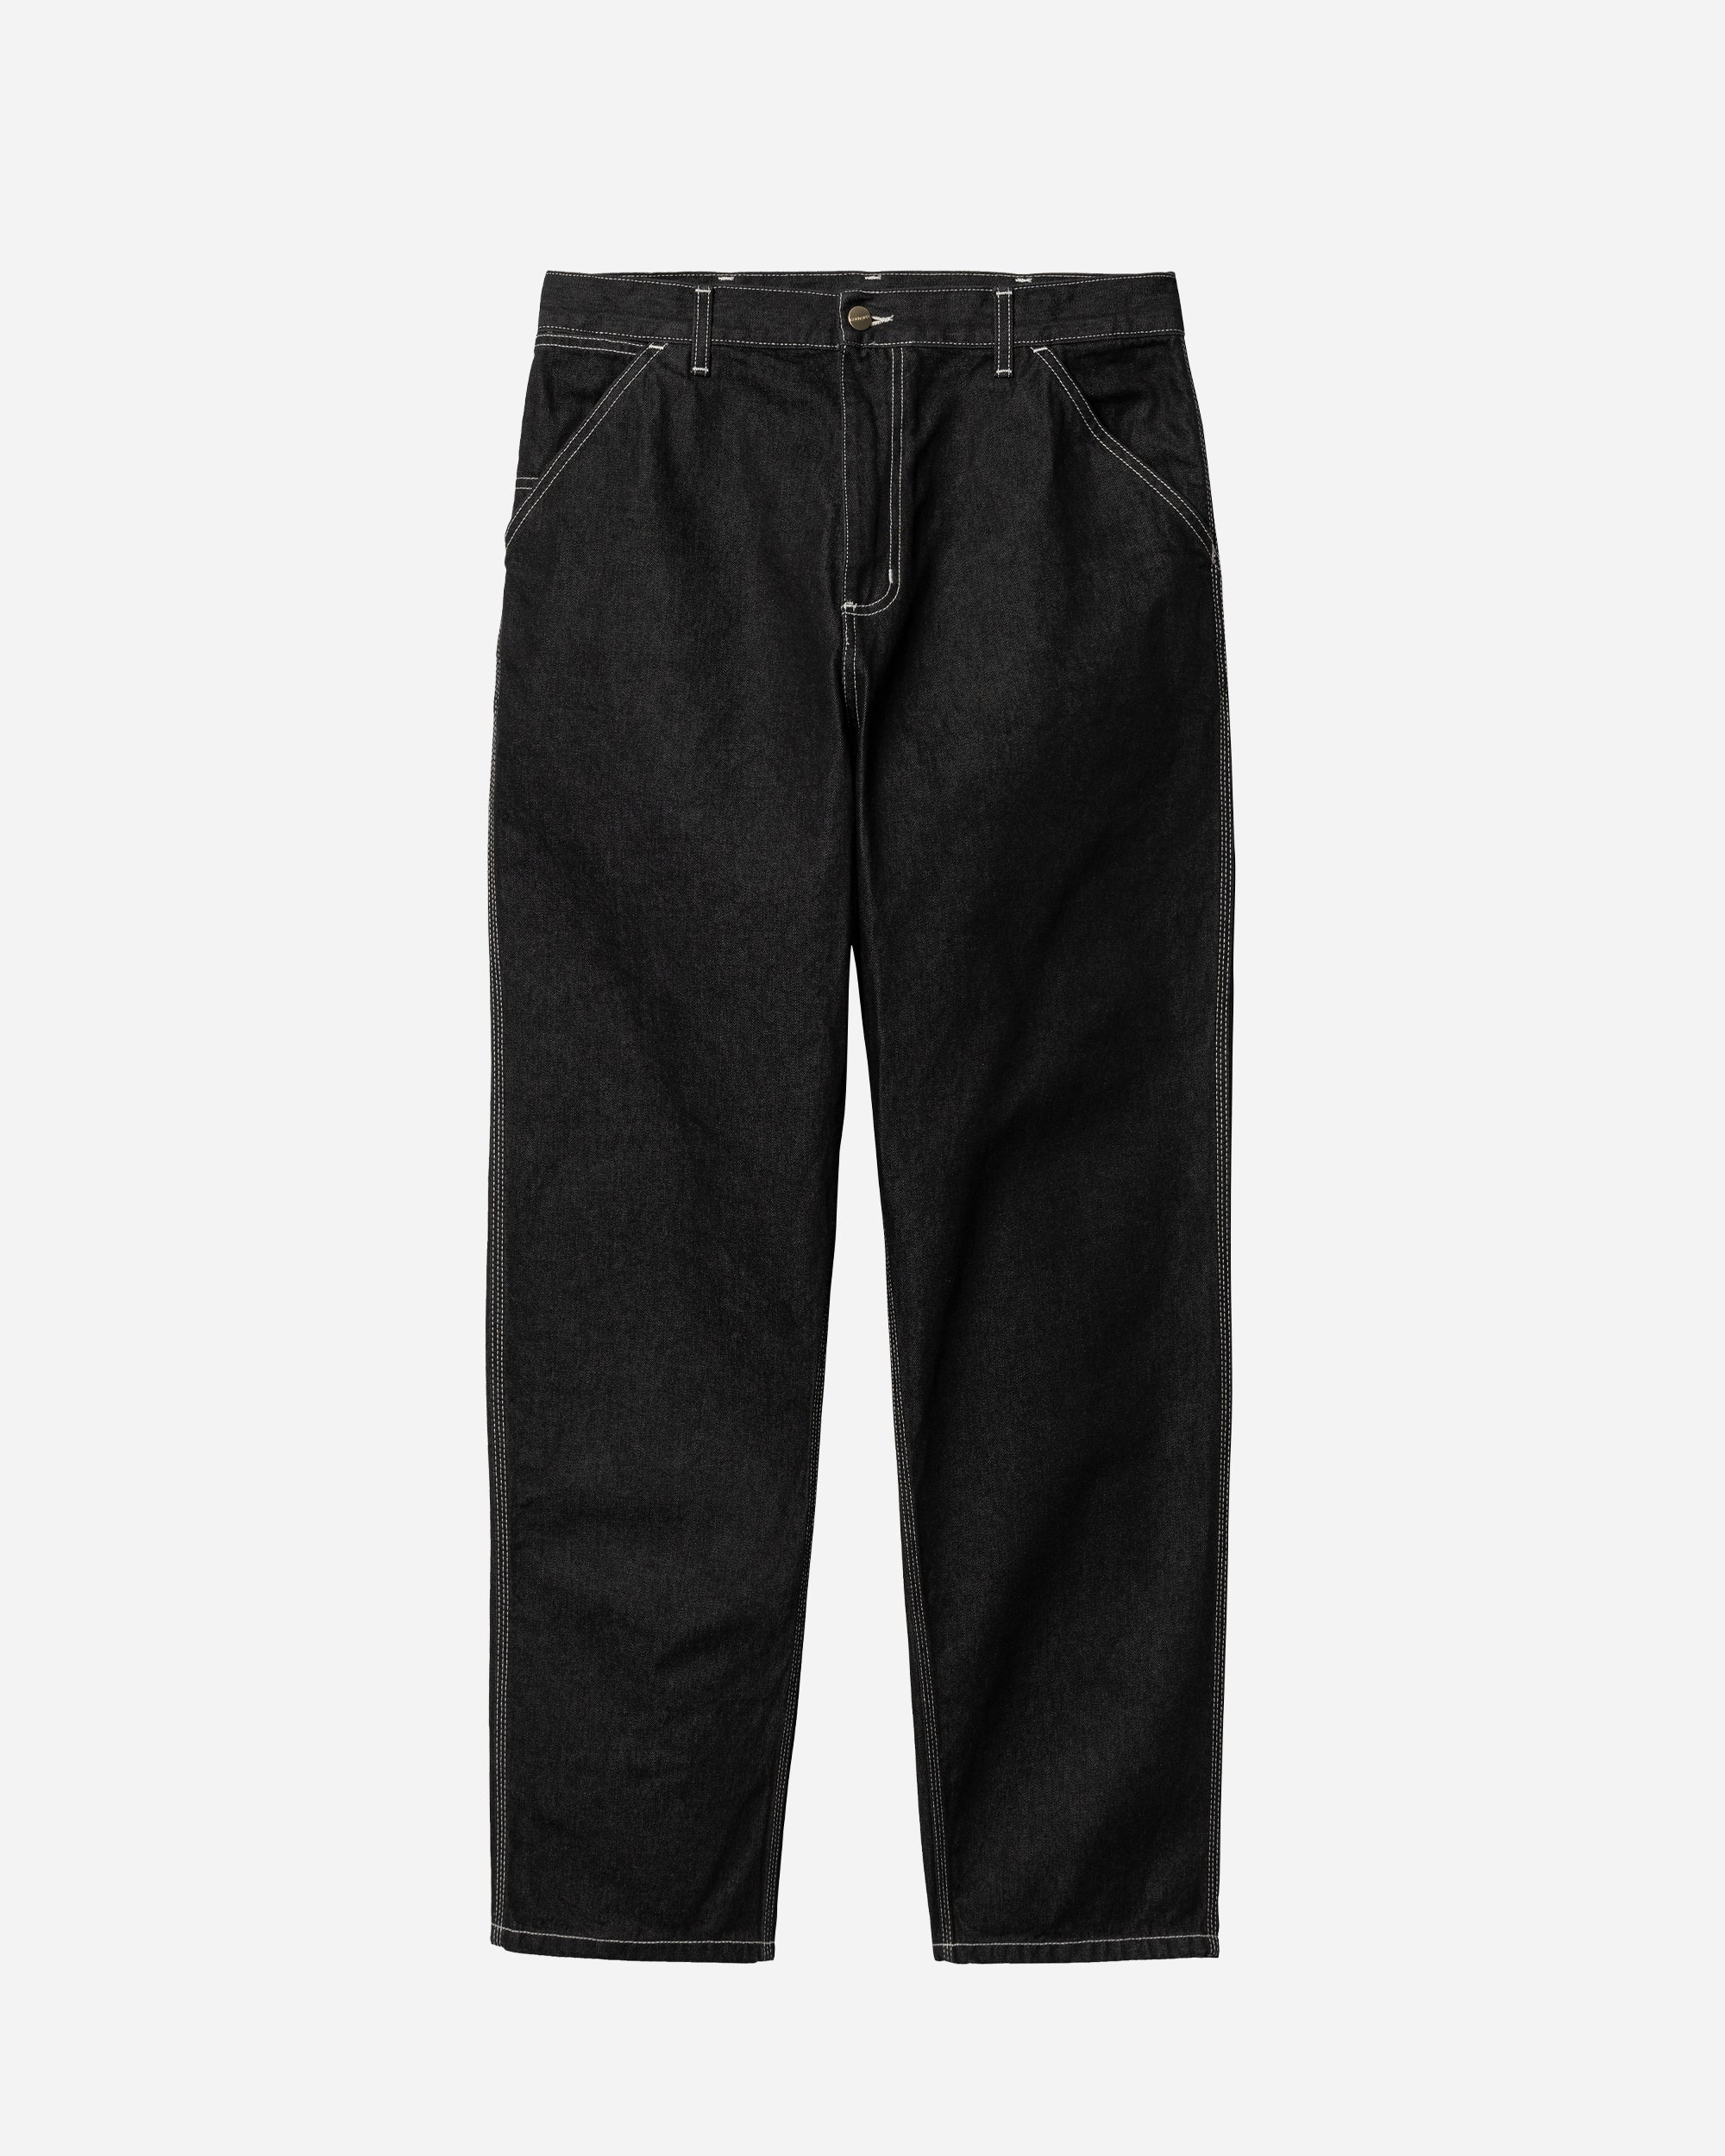 Carhartt WIP Simple Pants Black   I022947-892Y